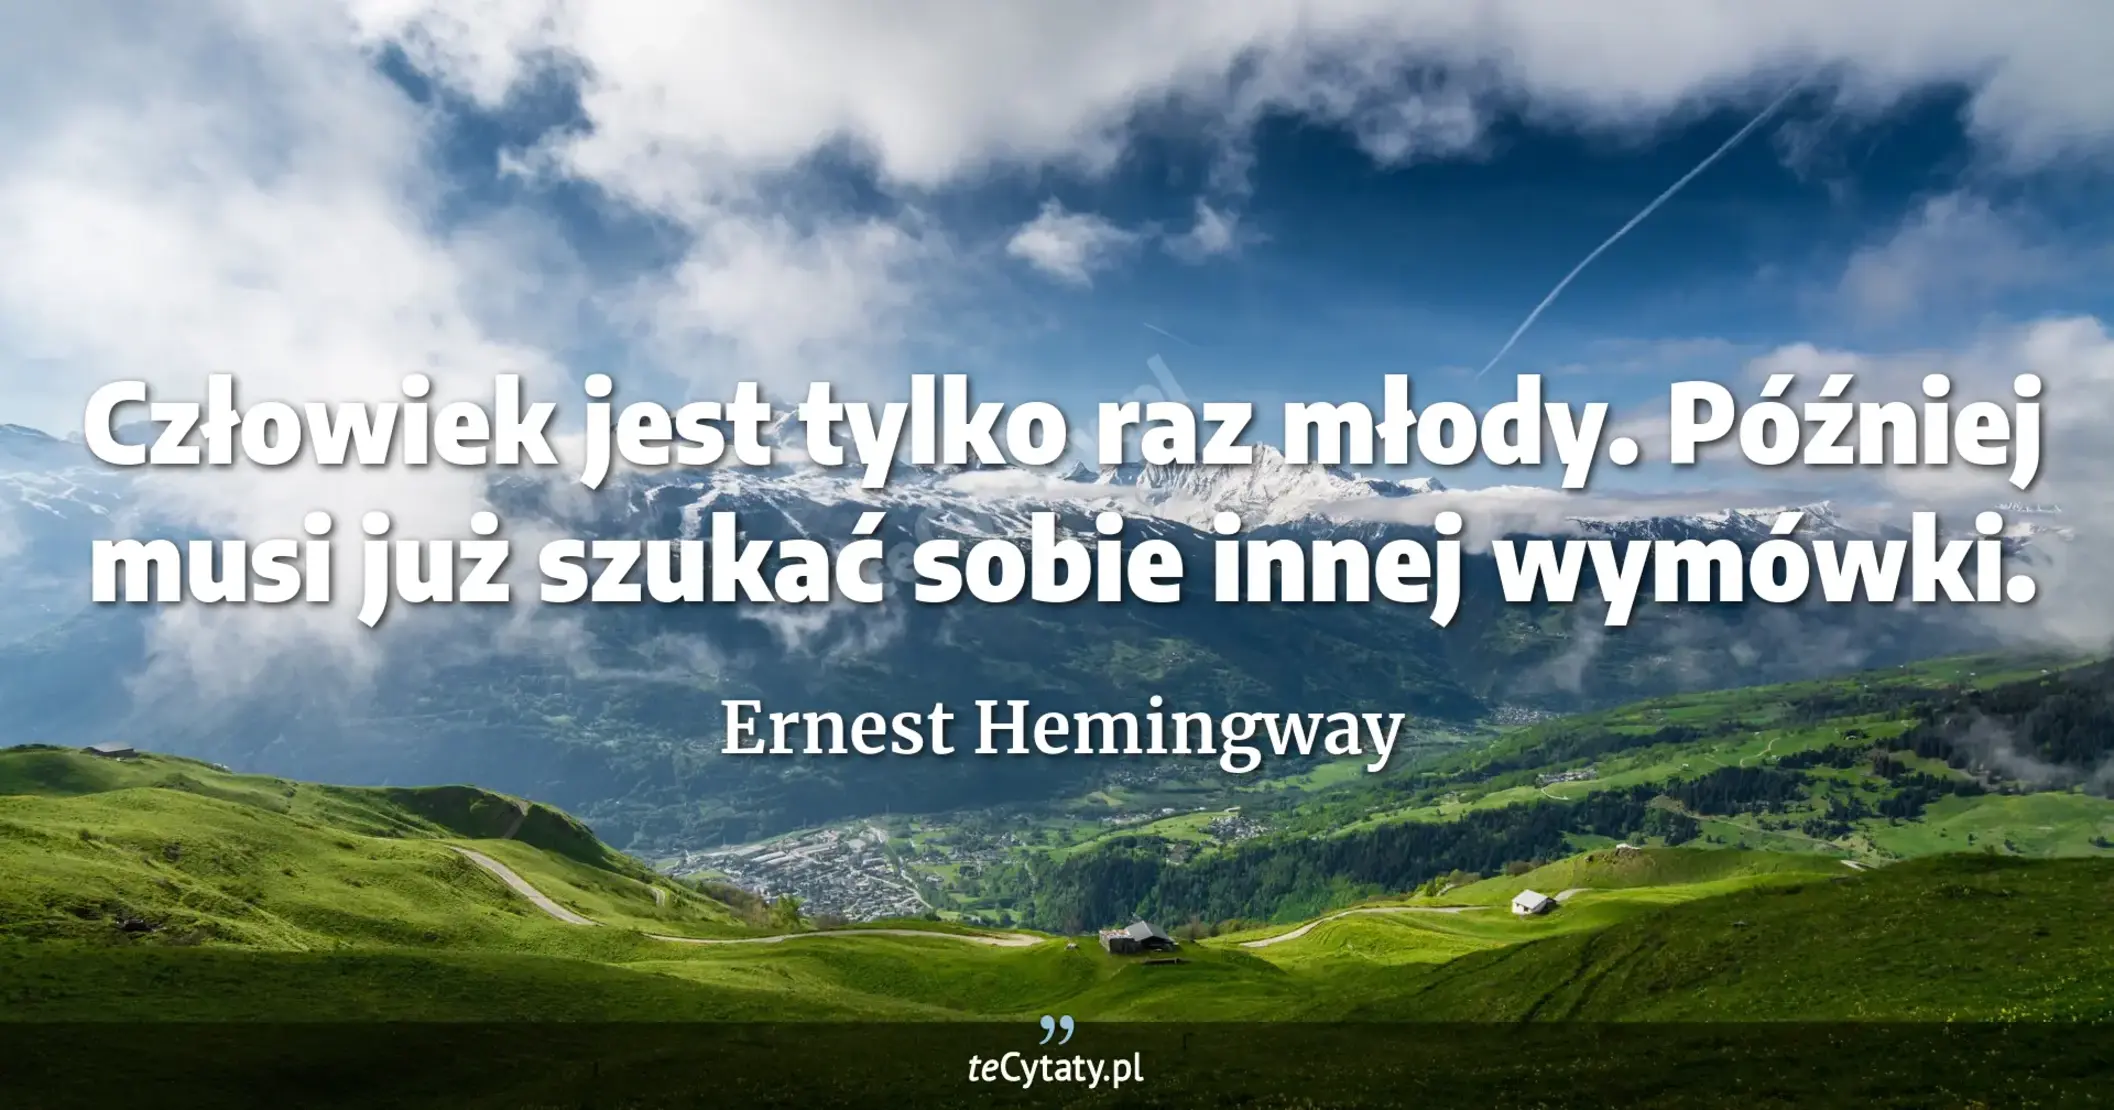 Człowiek jest tylko raz młody. Później musi już szukać sobie innej wymówki. - Ernest Hemingway